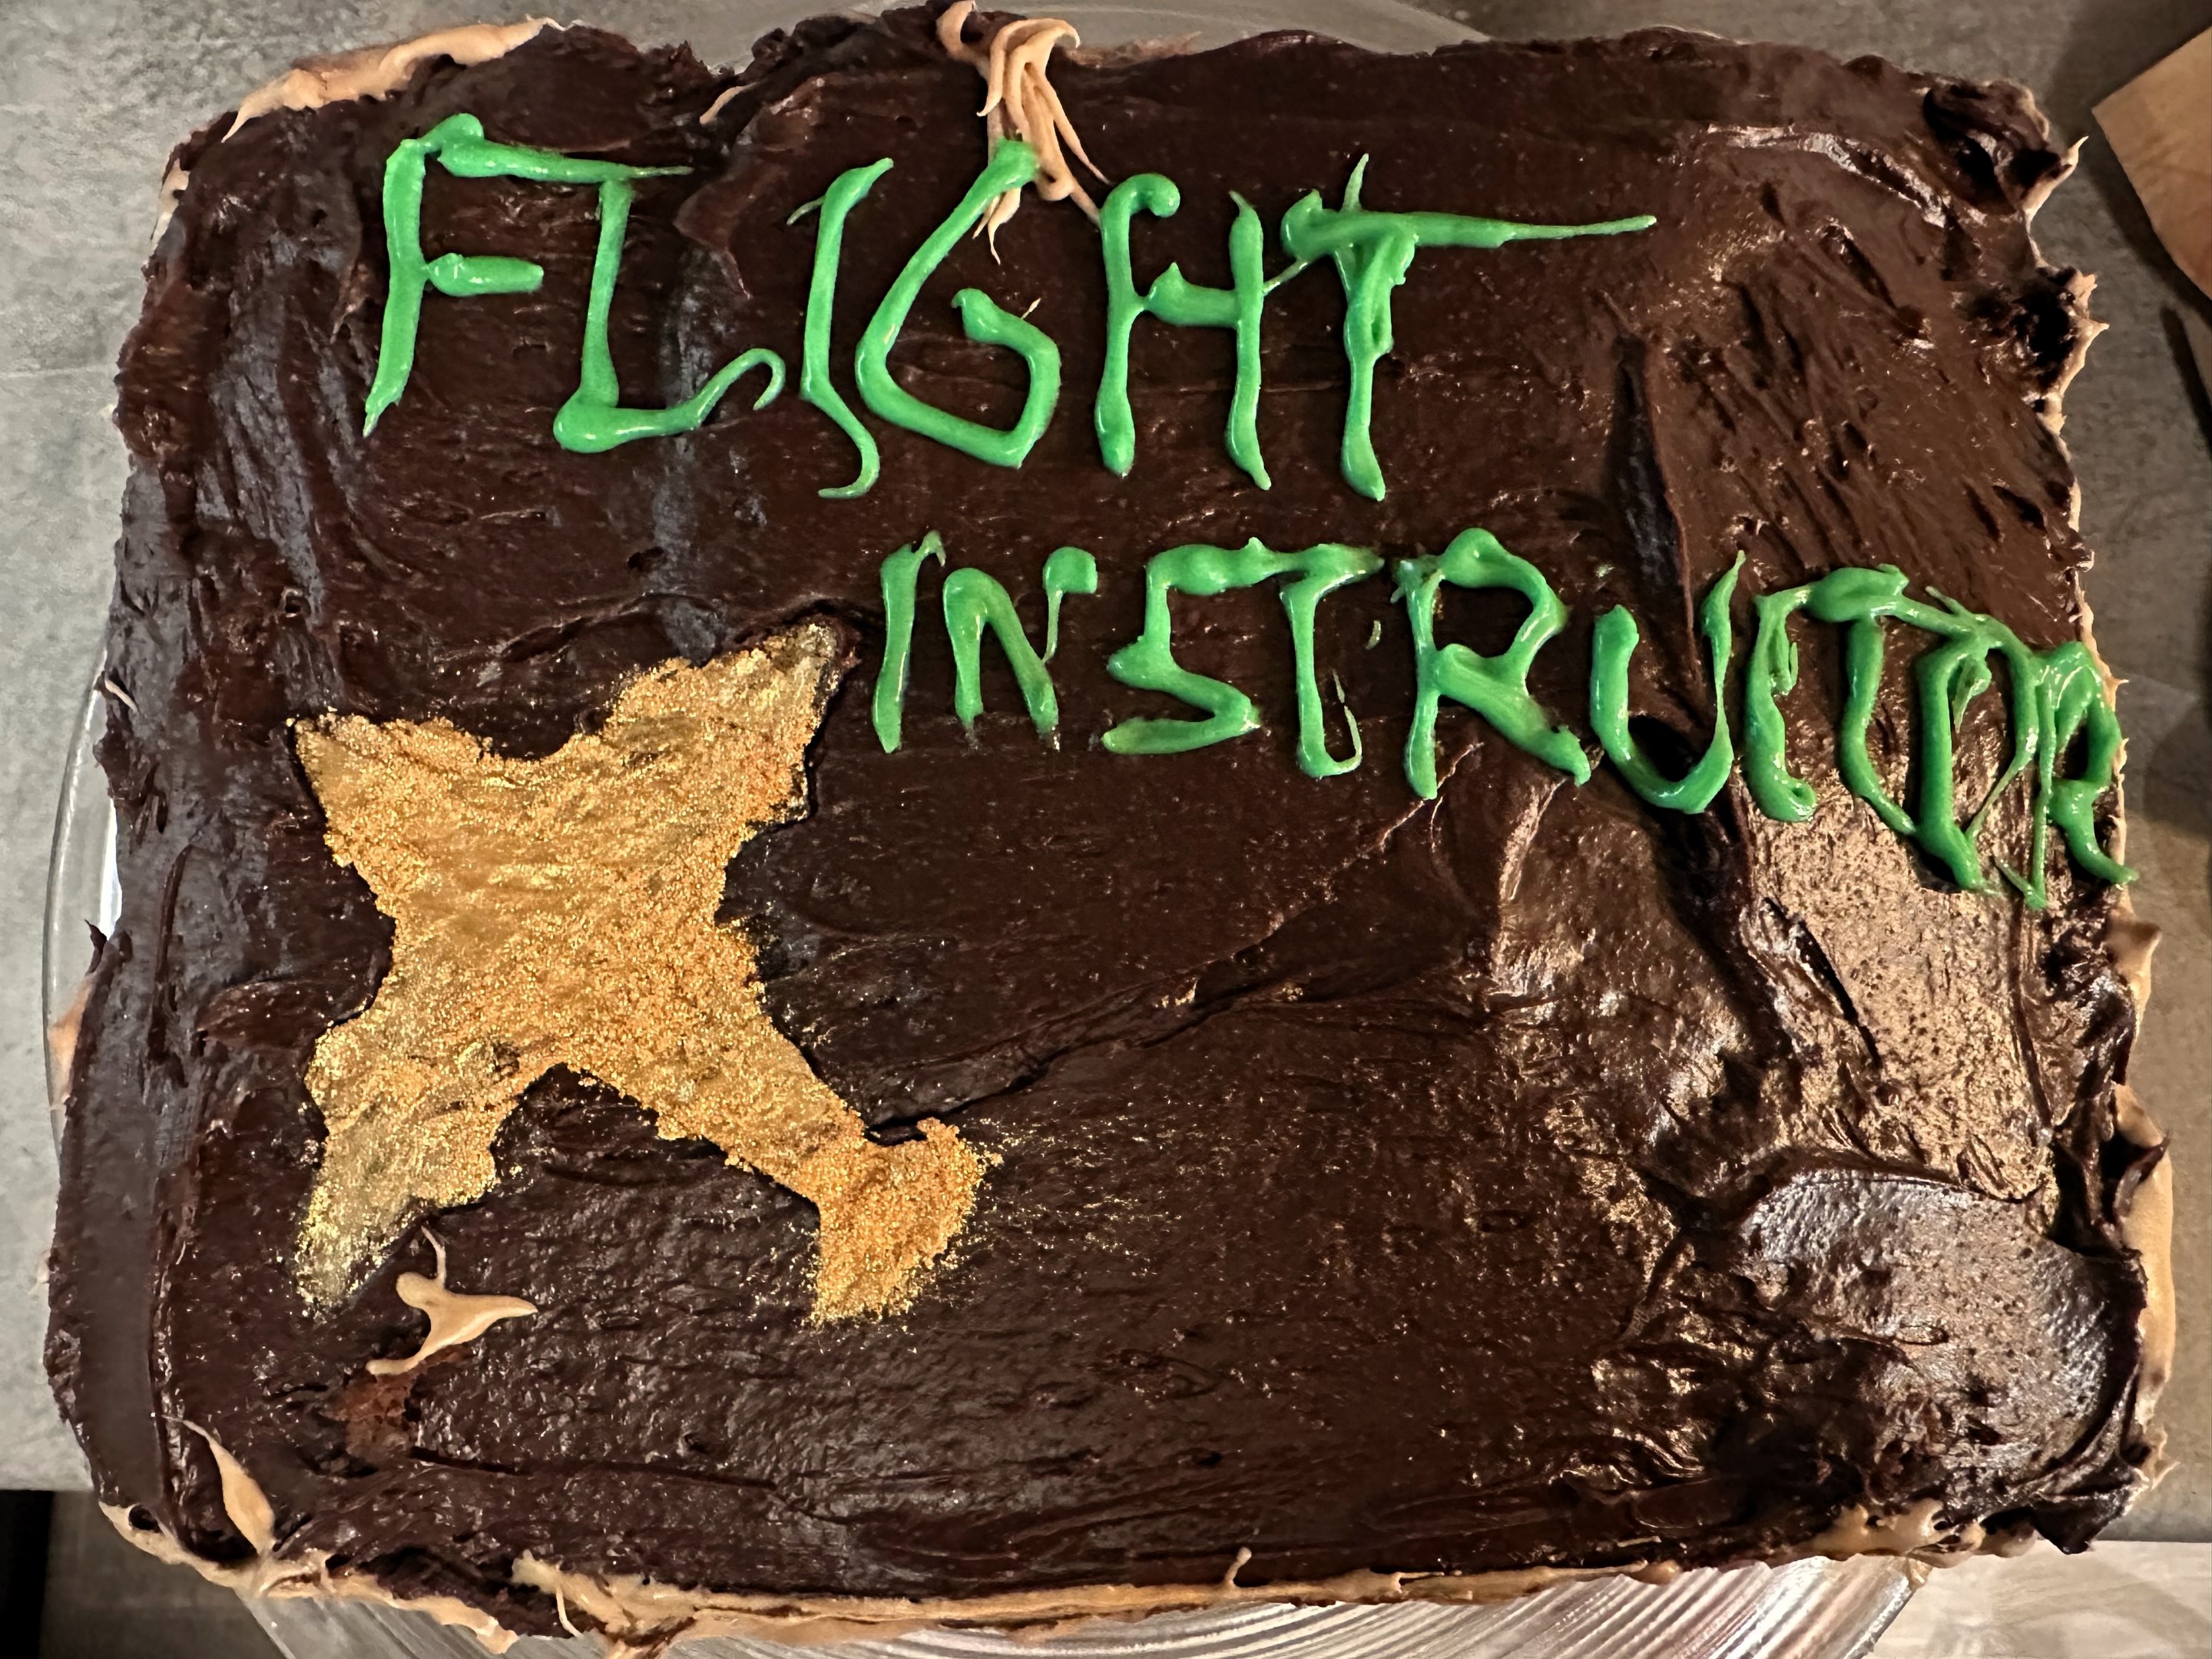 Flight instructor cake